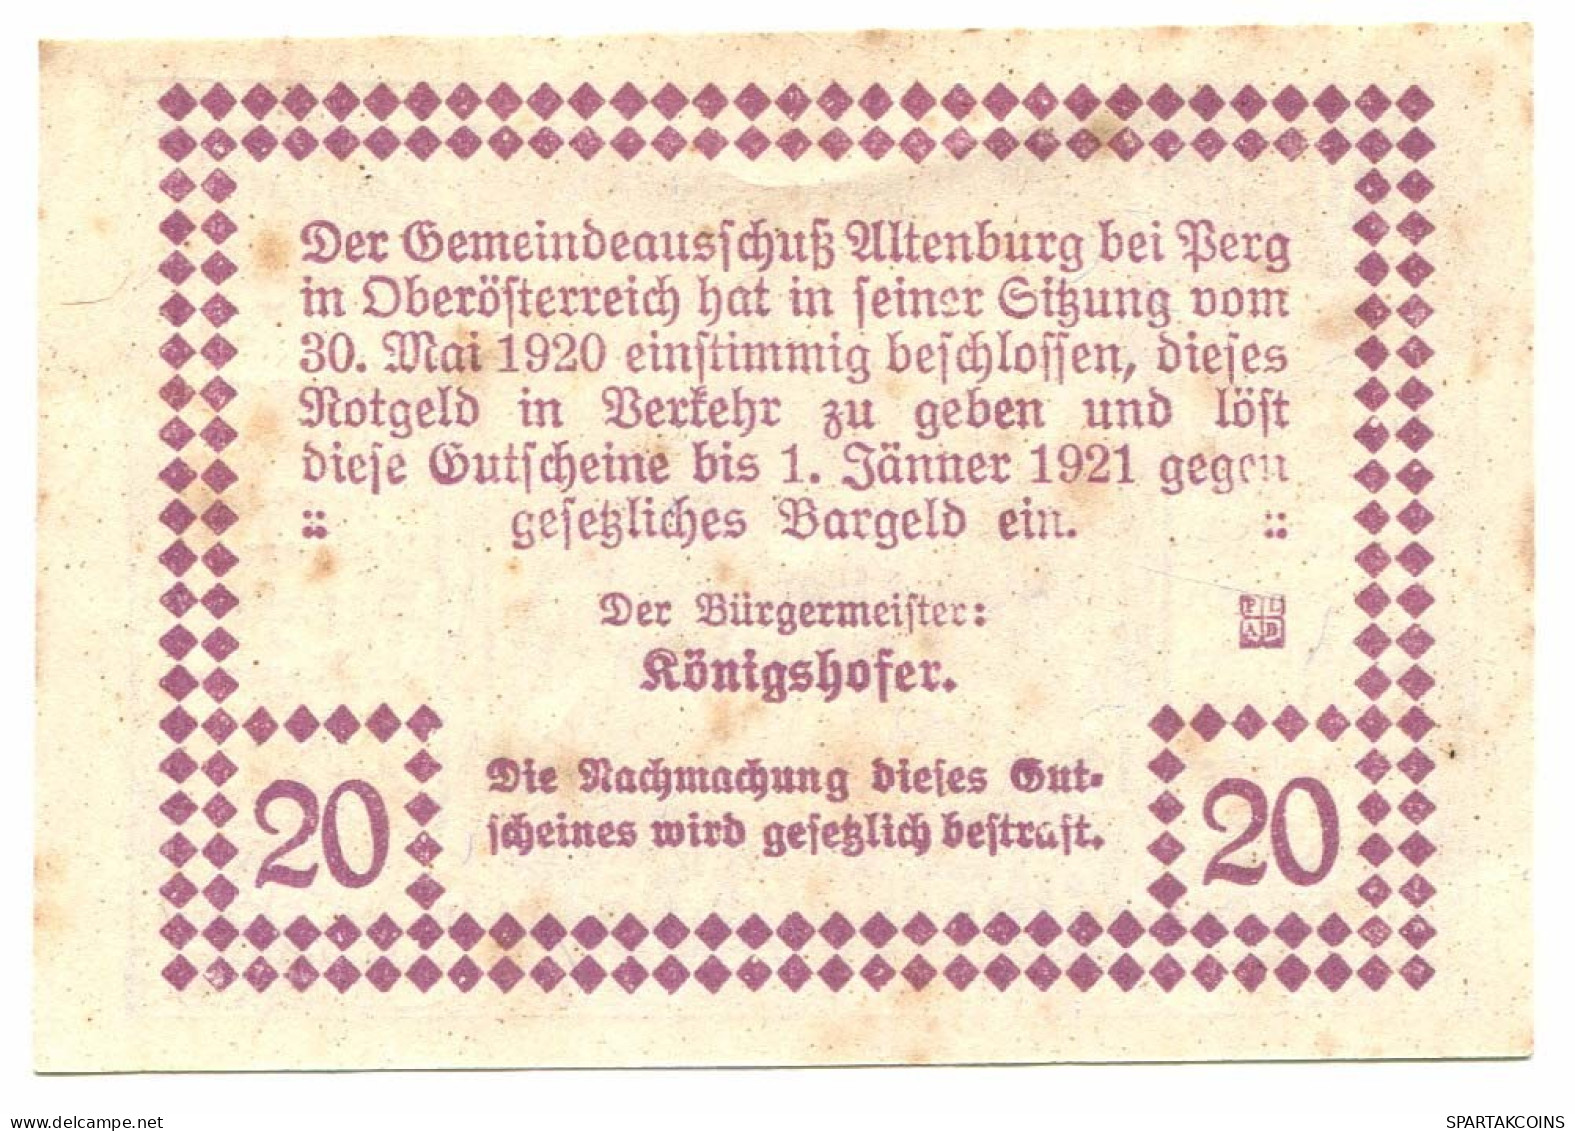 20 Heller 1921 PERG Österreich UNC Notgeld Papiergeld Banknote #P10253 - [11] Local Banknote Issues